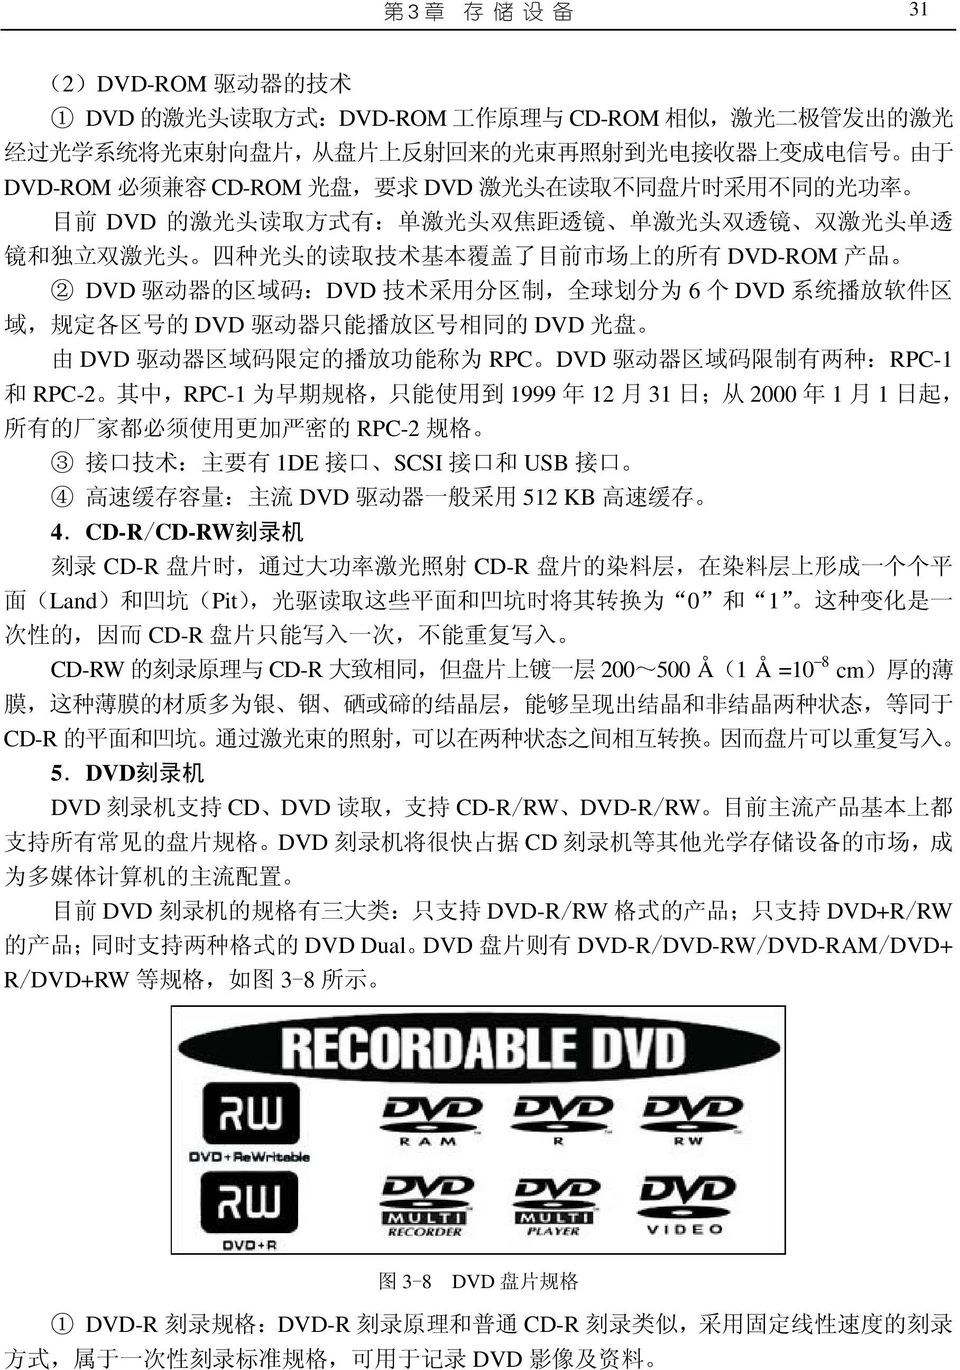 的 所 有 DVD-ROM 产 品 2 DVD 驱 动 器 的 区 域 码 :DVD 技 术 采 用 分 区 制, 全 球 划 分 为 6 个 DVD 系 统 播 放 软 件 区 域, 规 定 各 区 号 的 DVD 驱 动 器 只 能 播 放 区 号 相 同 的 DVD 光 盘 由 DVD 驱 动 器 区 域 码 限 定 的 播 放 功 能 称 为 RPC DVD 驱 动 器 区 域 码 限